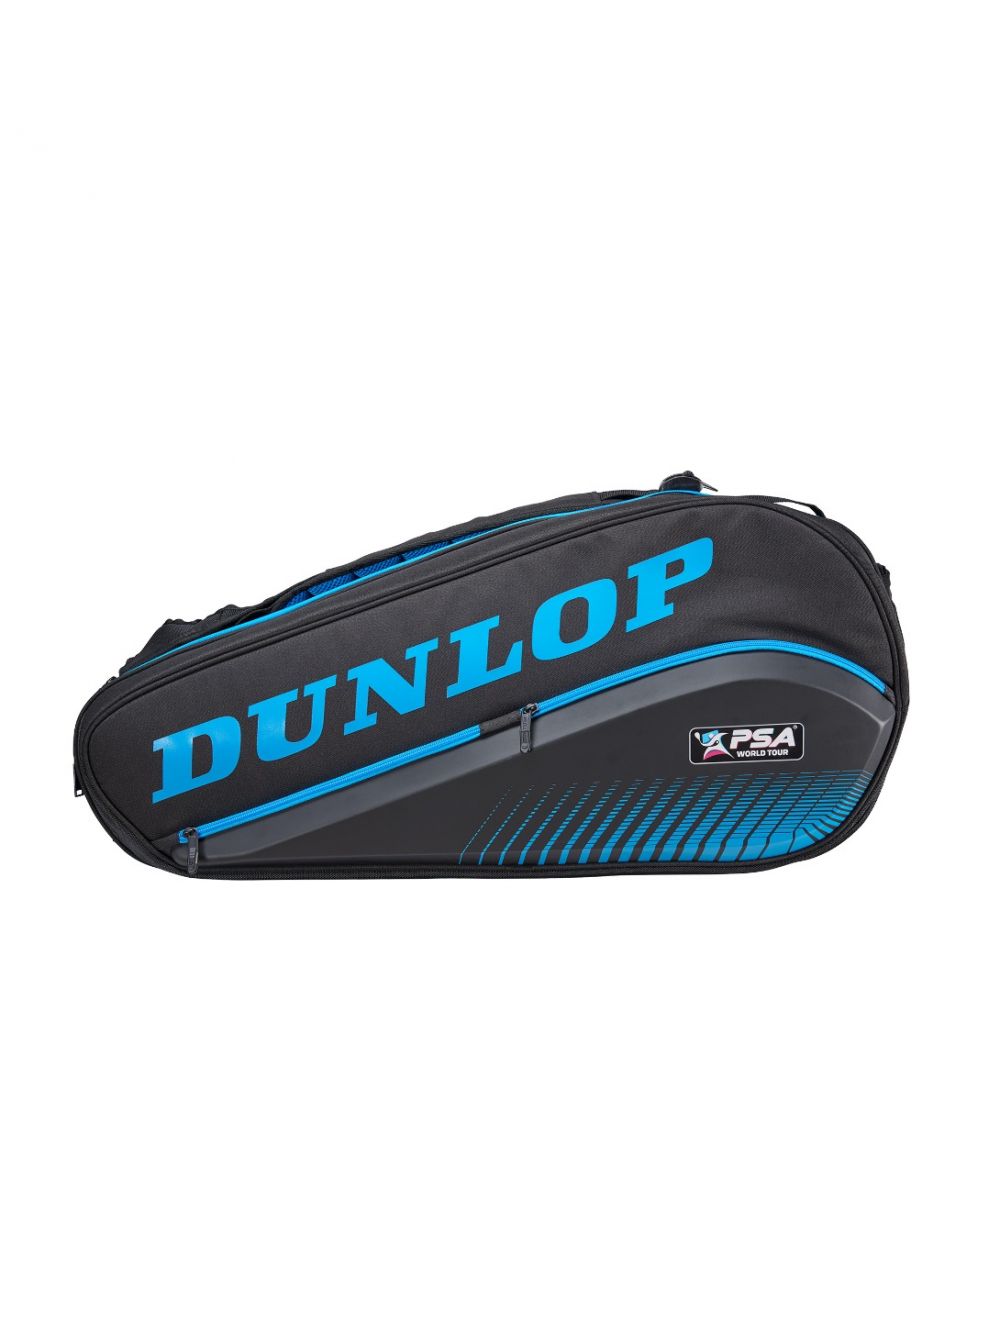 Dunlop PSA 12 Racket Bag LTD Edition Squash tassen Dunlop